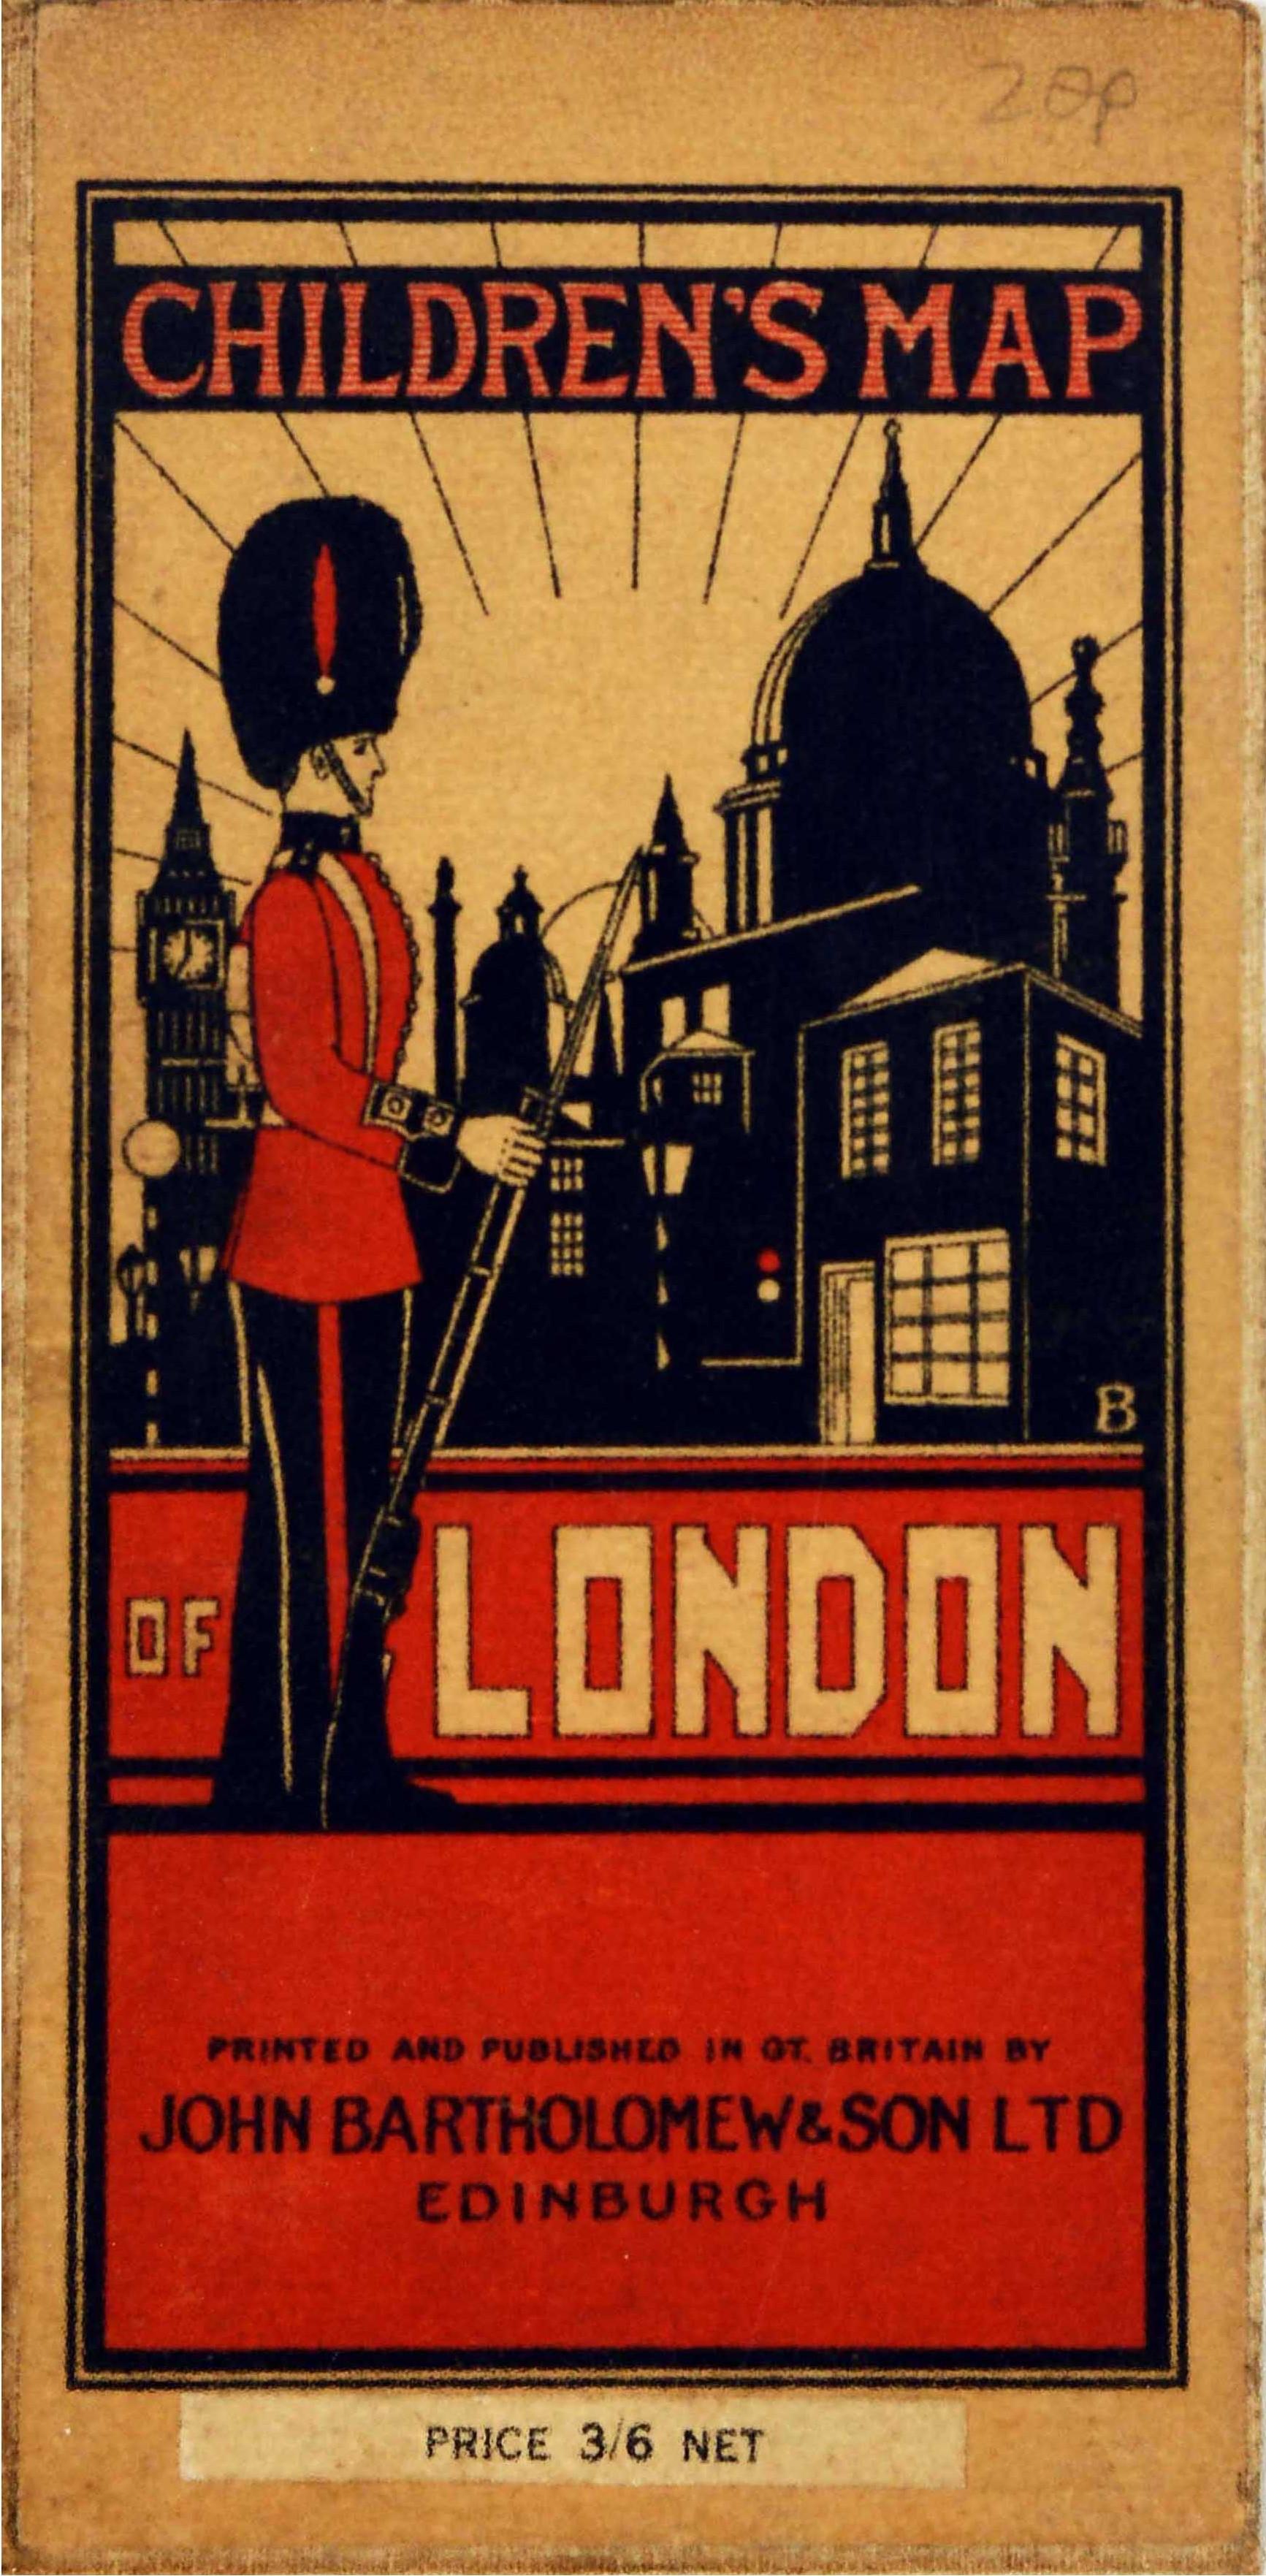 Affiche de voyage d'origine pour enfants d'une carte des fairytales de Londres - Print de Leslie Bullock